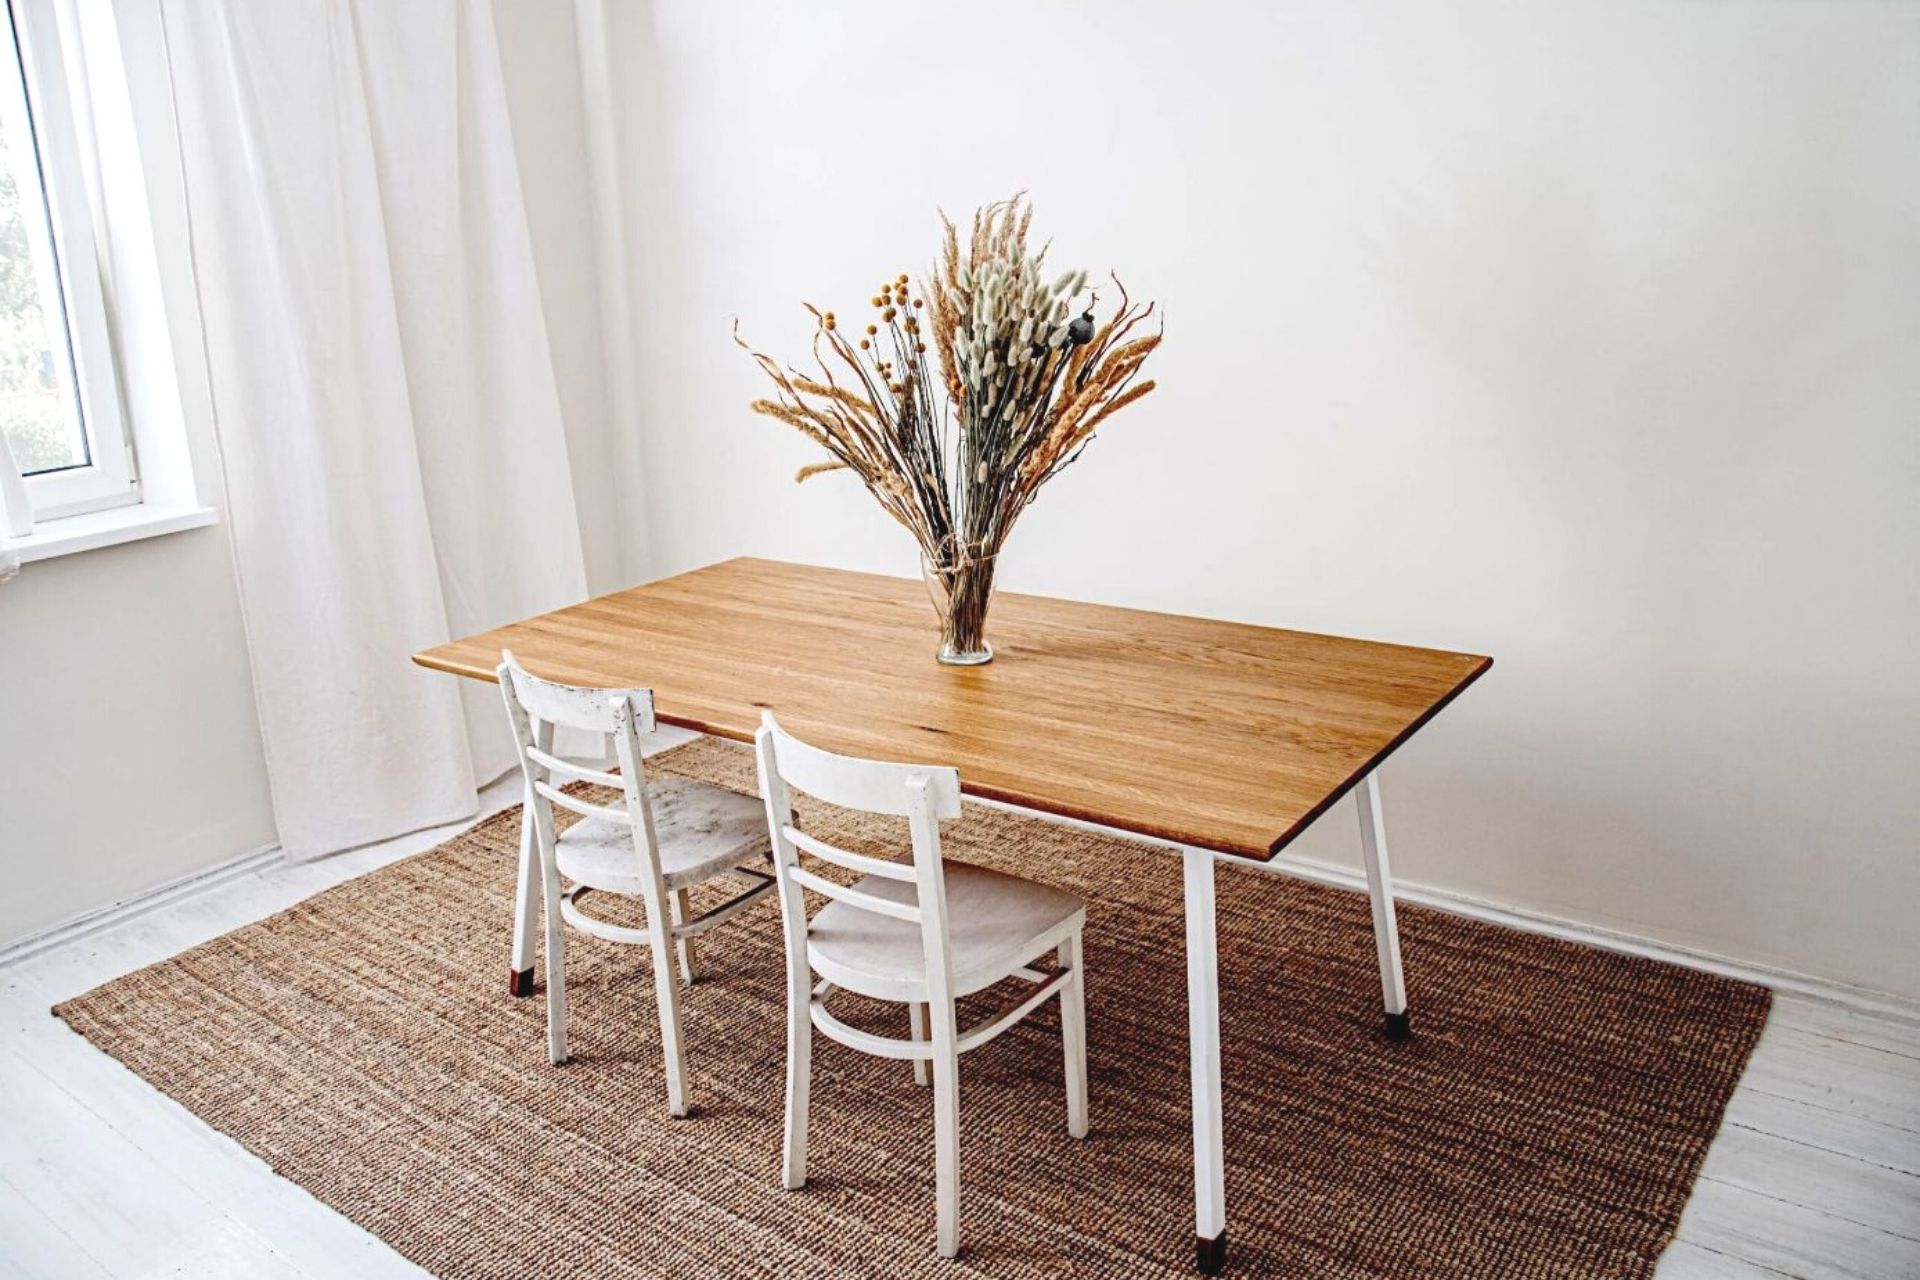 1_FINT modern solid oak table (white)